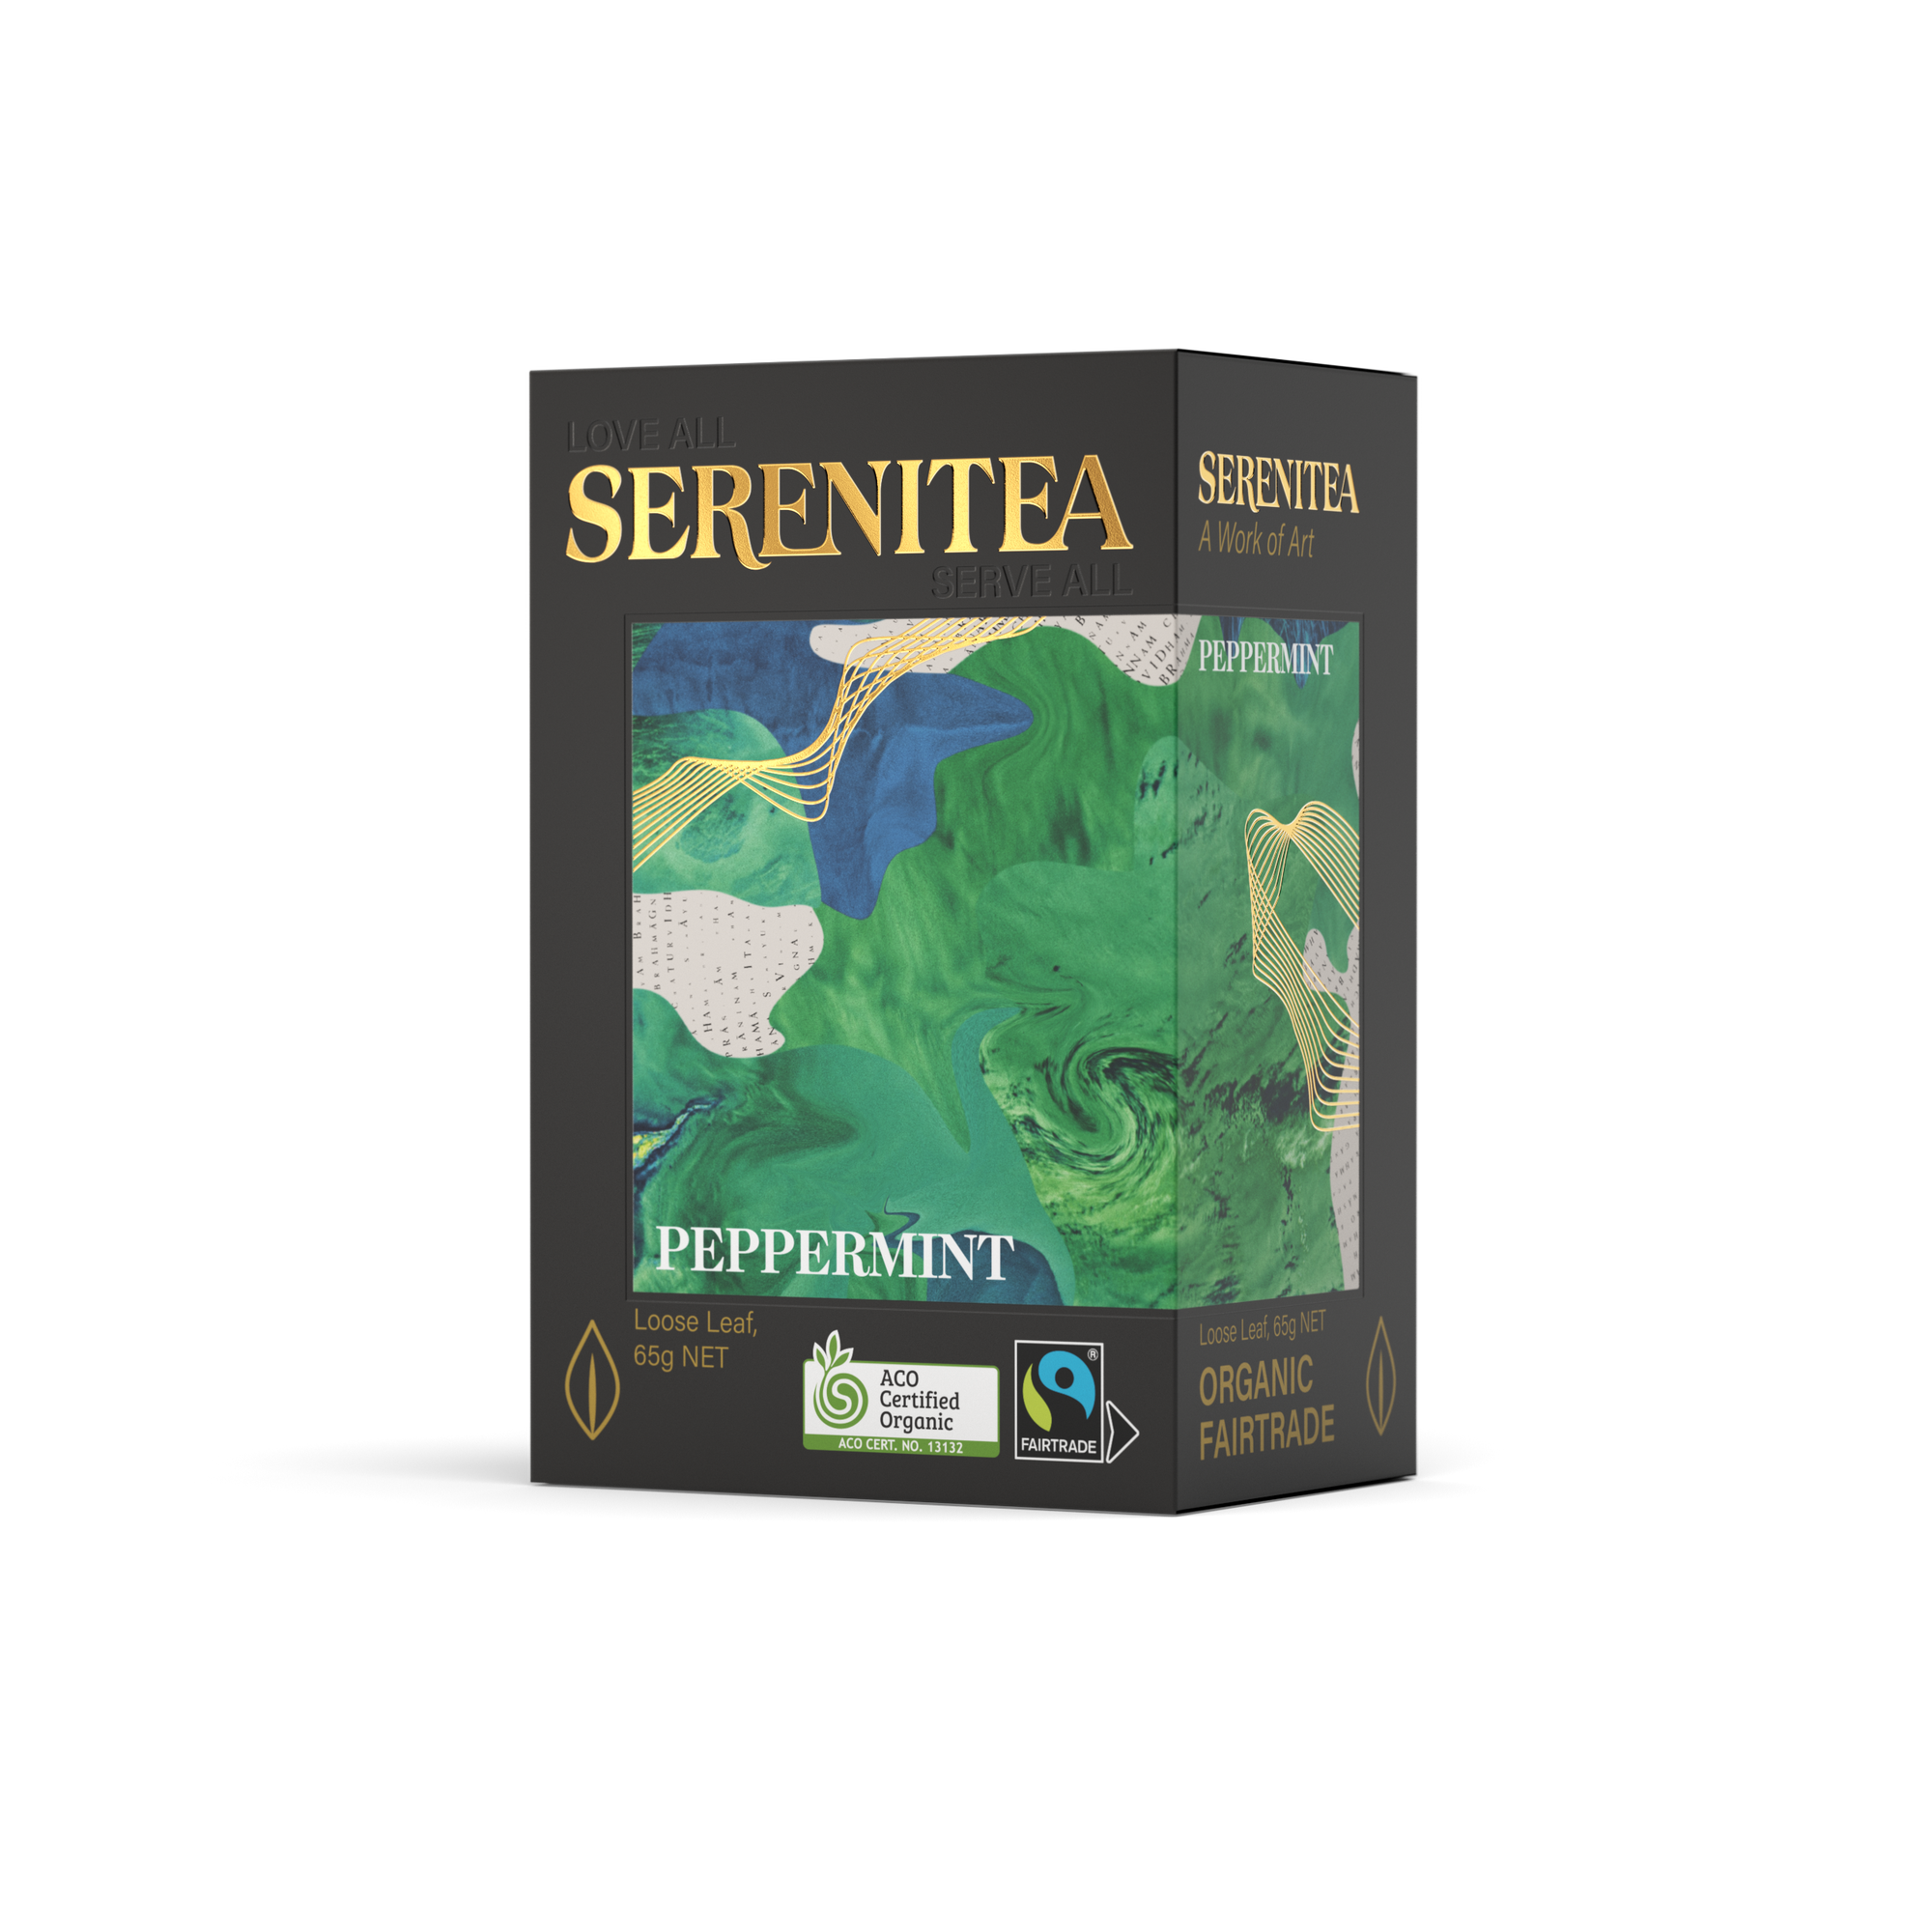 SereniTea Peppermint Loose Leaf Tea